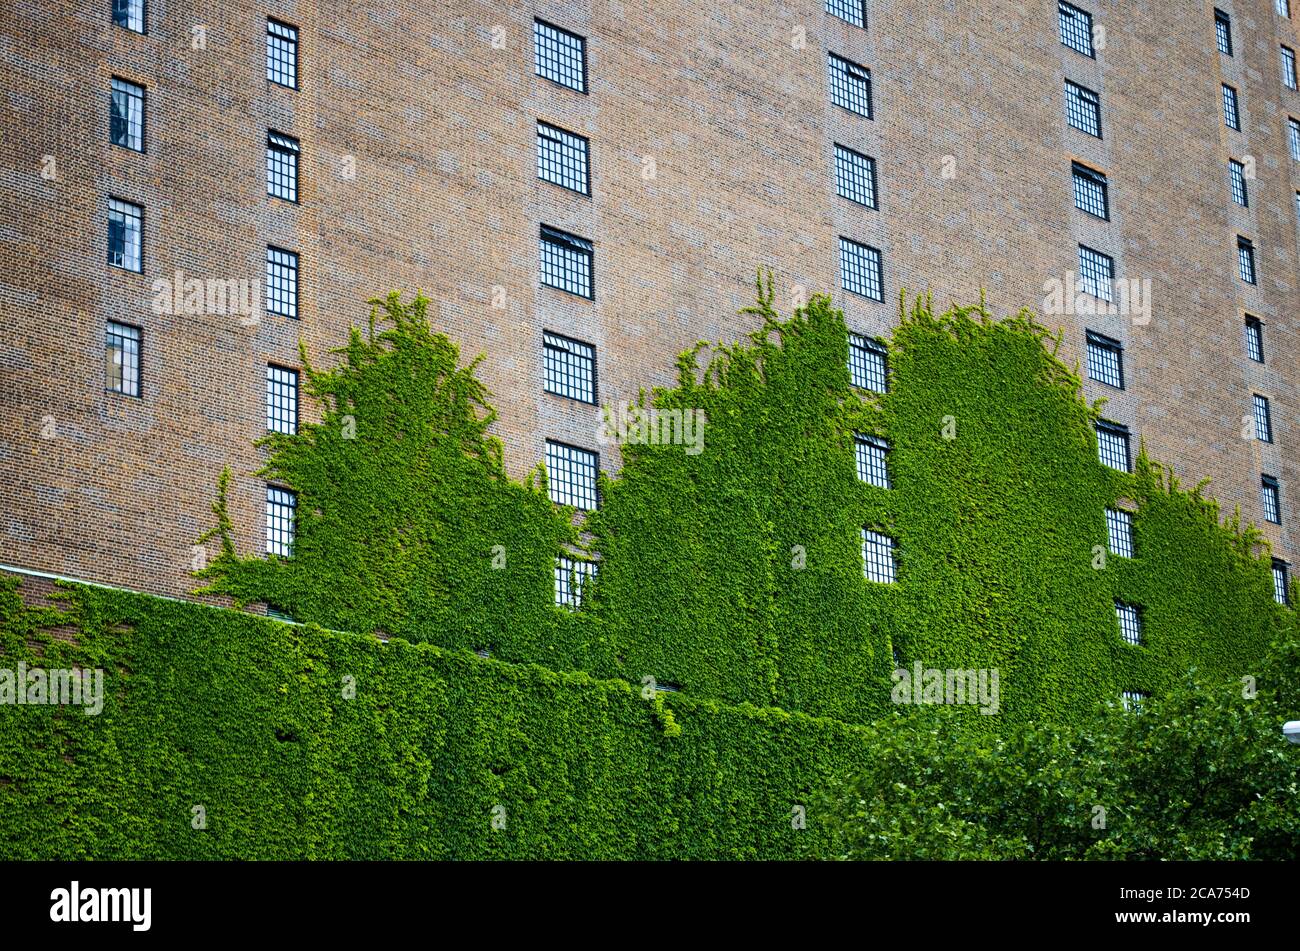 New York City Backstein Wohngebäude Wand mit hellen kletternden Efeu Reben bedeckt Stockfoto